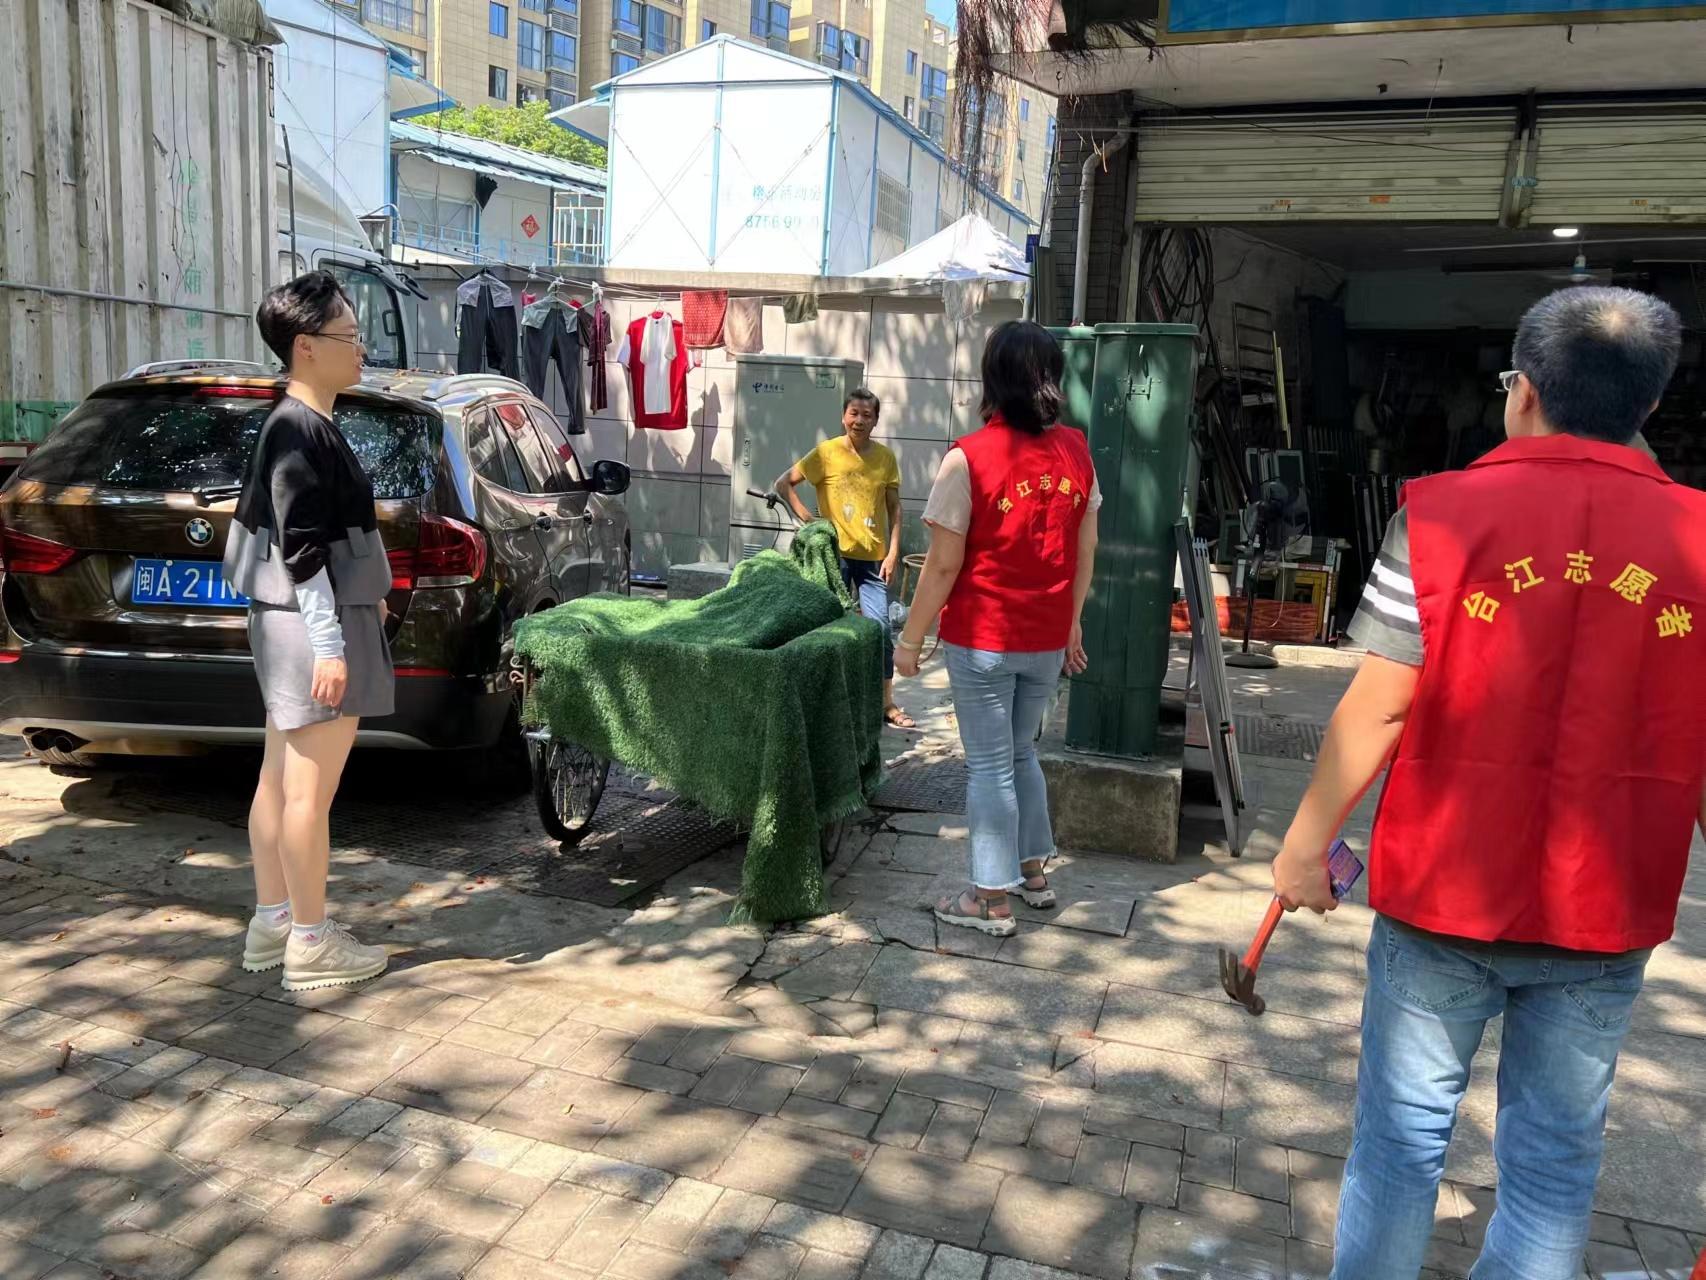 【携程攻略】上海南京路步行街景点,作为一个老上海人，同时小时候也是住在南京路附近的人来说，这条街的…